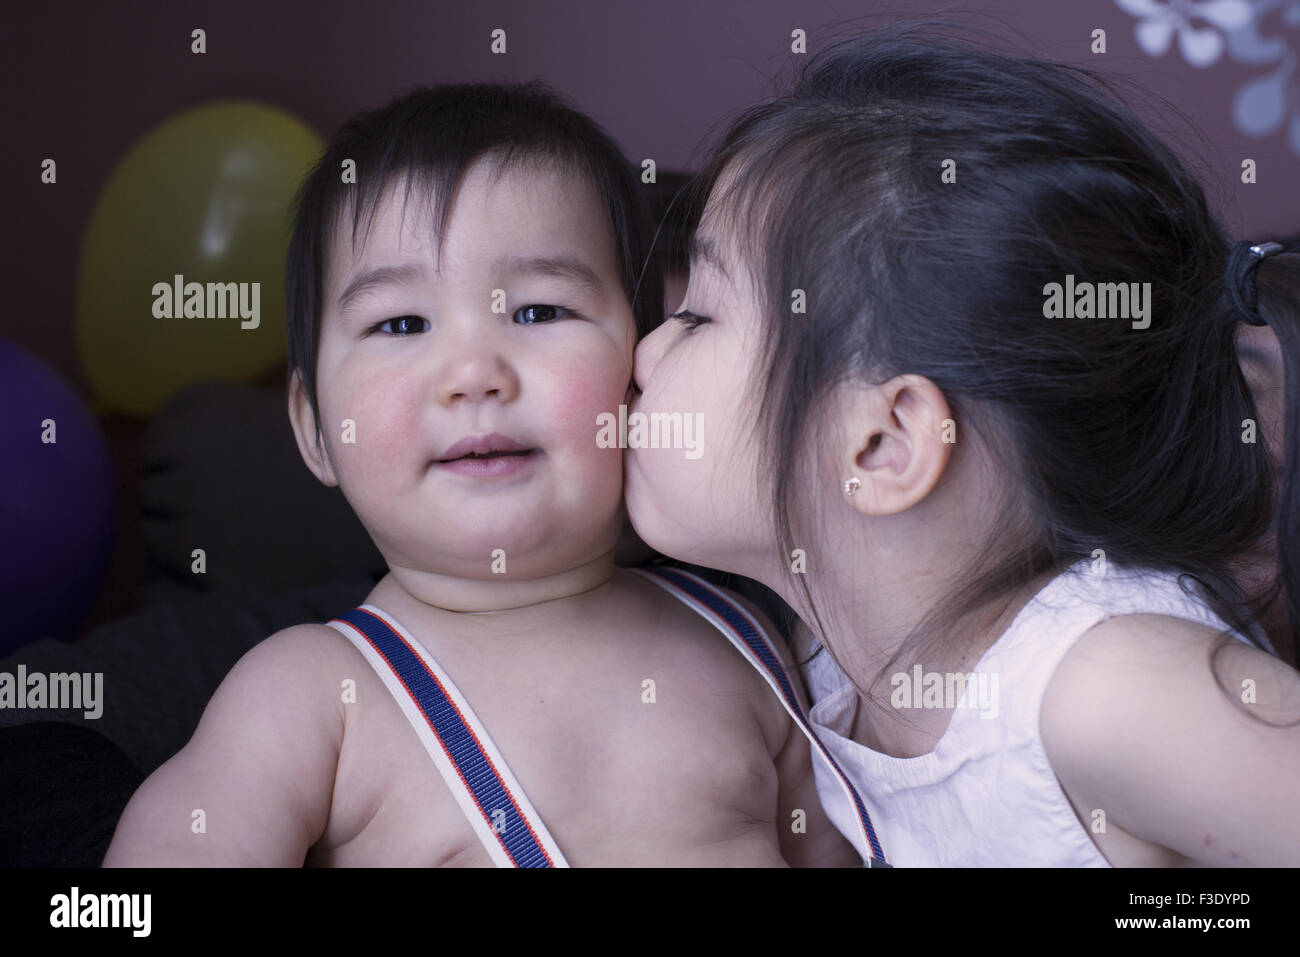 Piccola ragazza baciare fratellino sulla guancia, ritratto Foto Stock